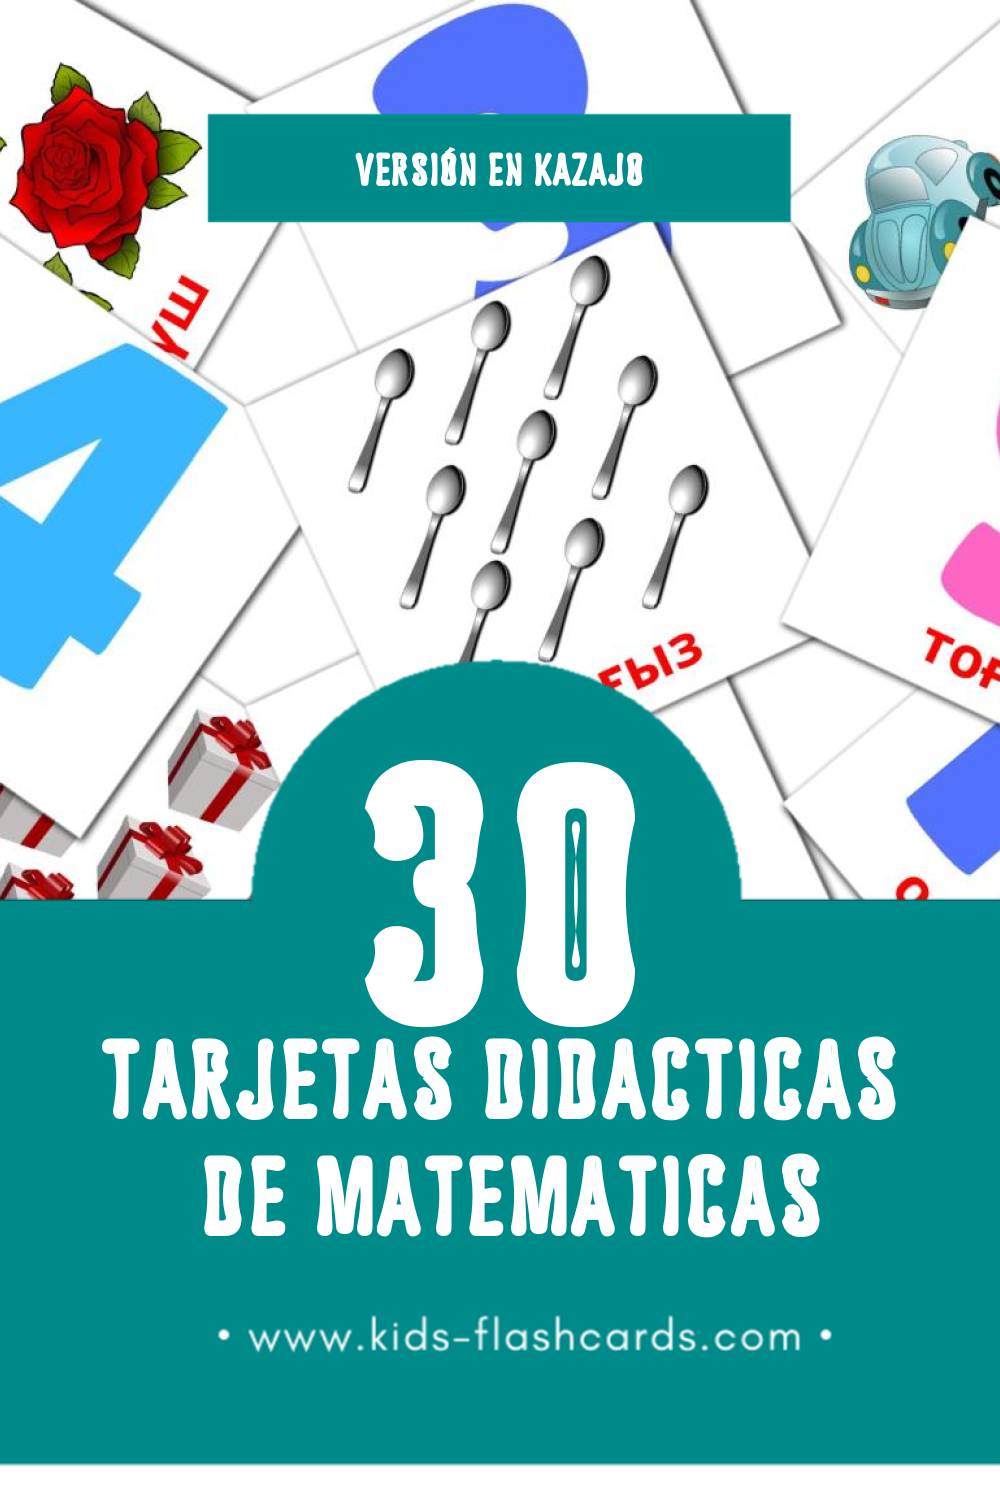 Tarjetas visuales de Математика para niños pequeños (30 tarjetas en Kazajo)